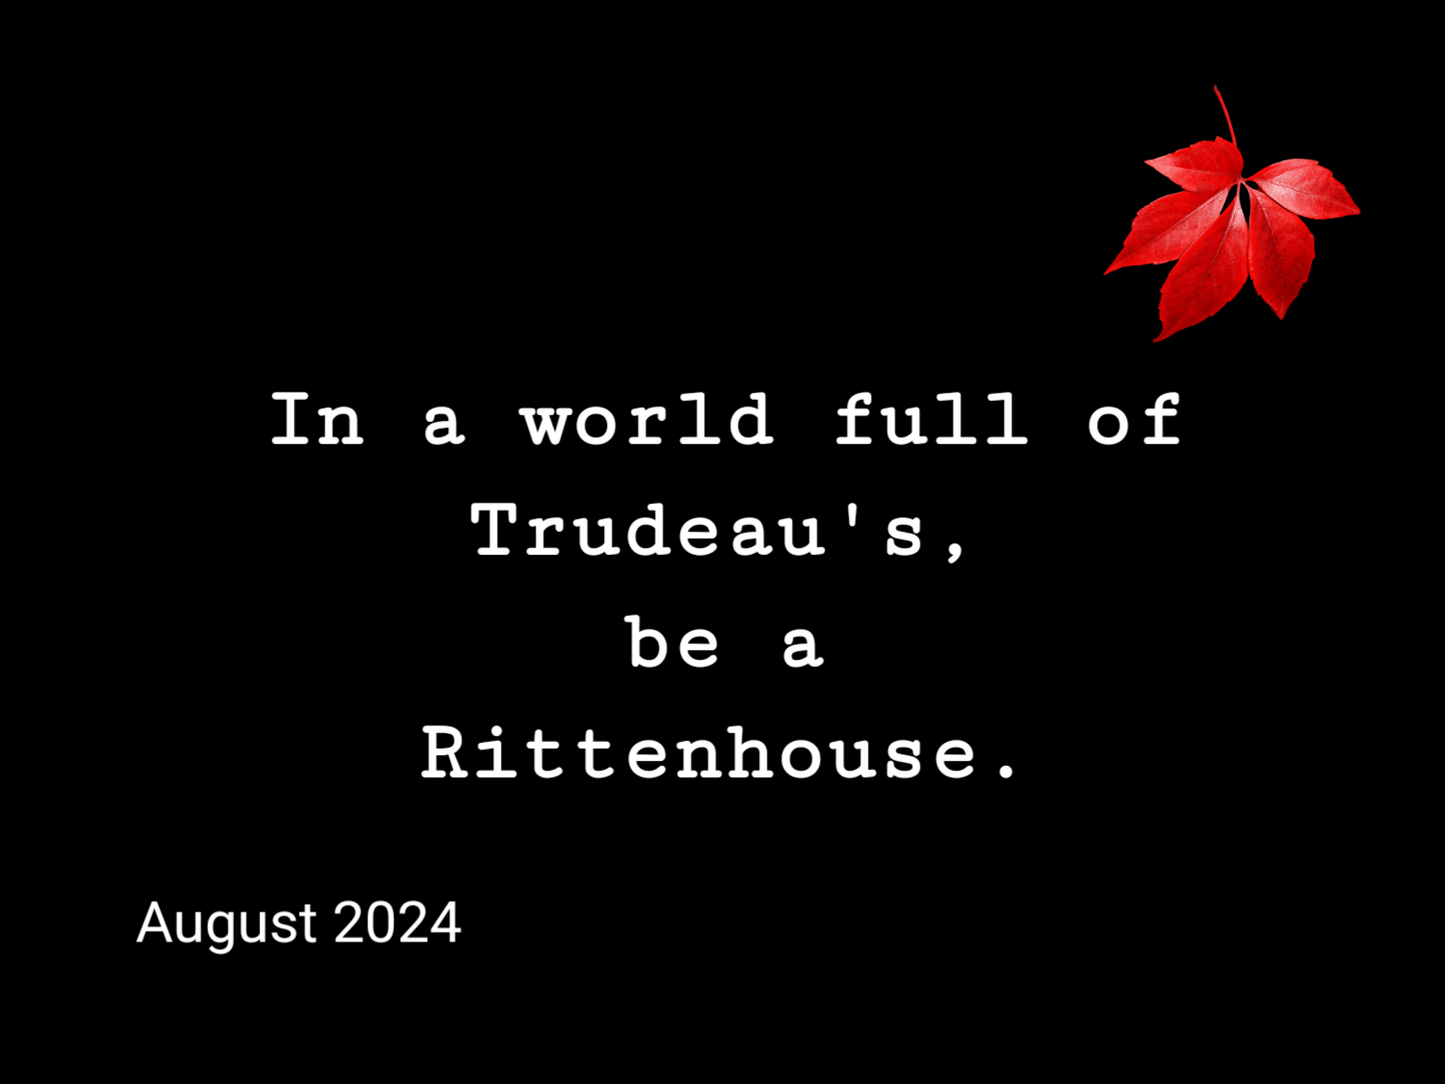 A Fuck Trudeau Calendar 2024